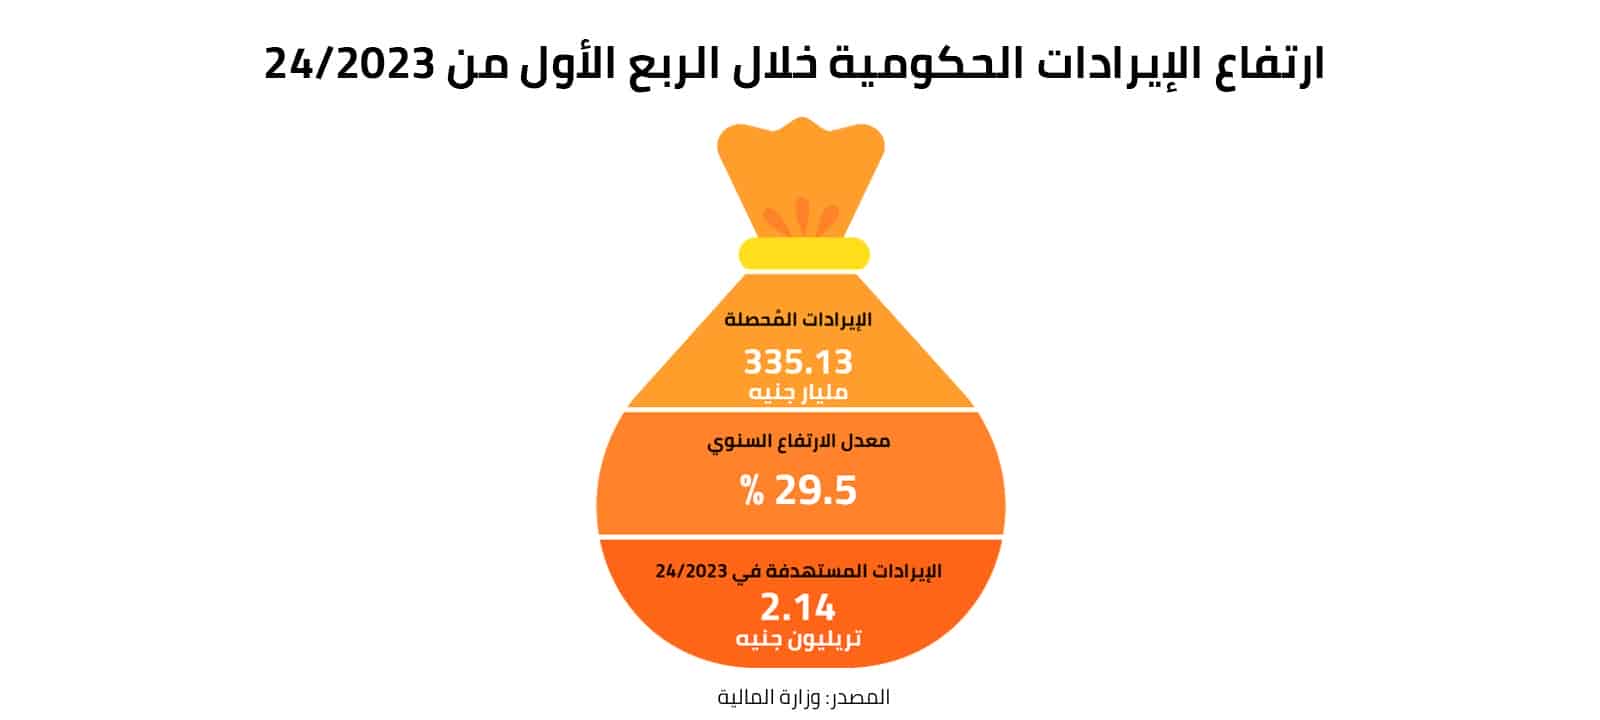 ارتفاع الإيرادات الحكومية خلال الربع الأول من 2023/24